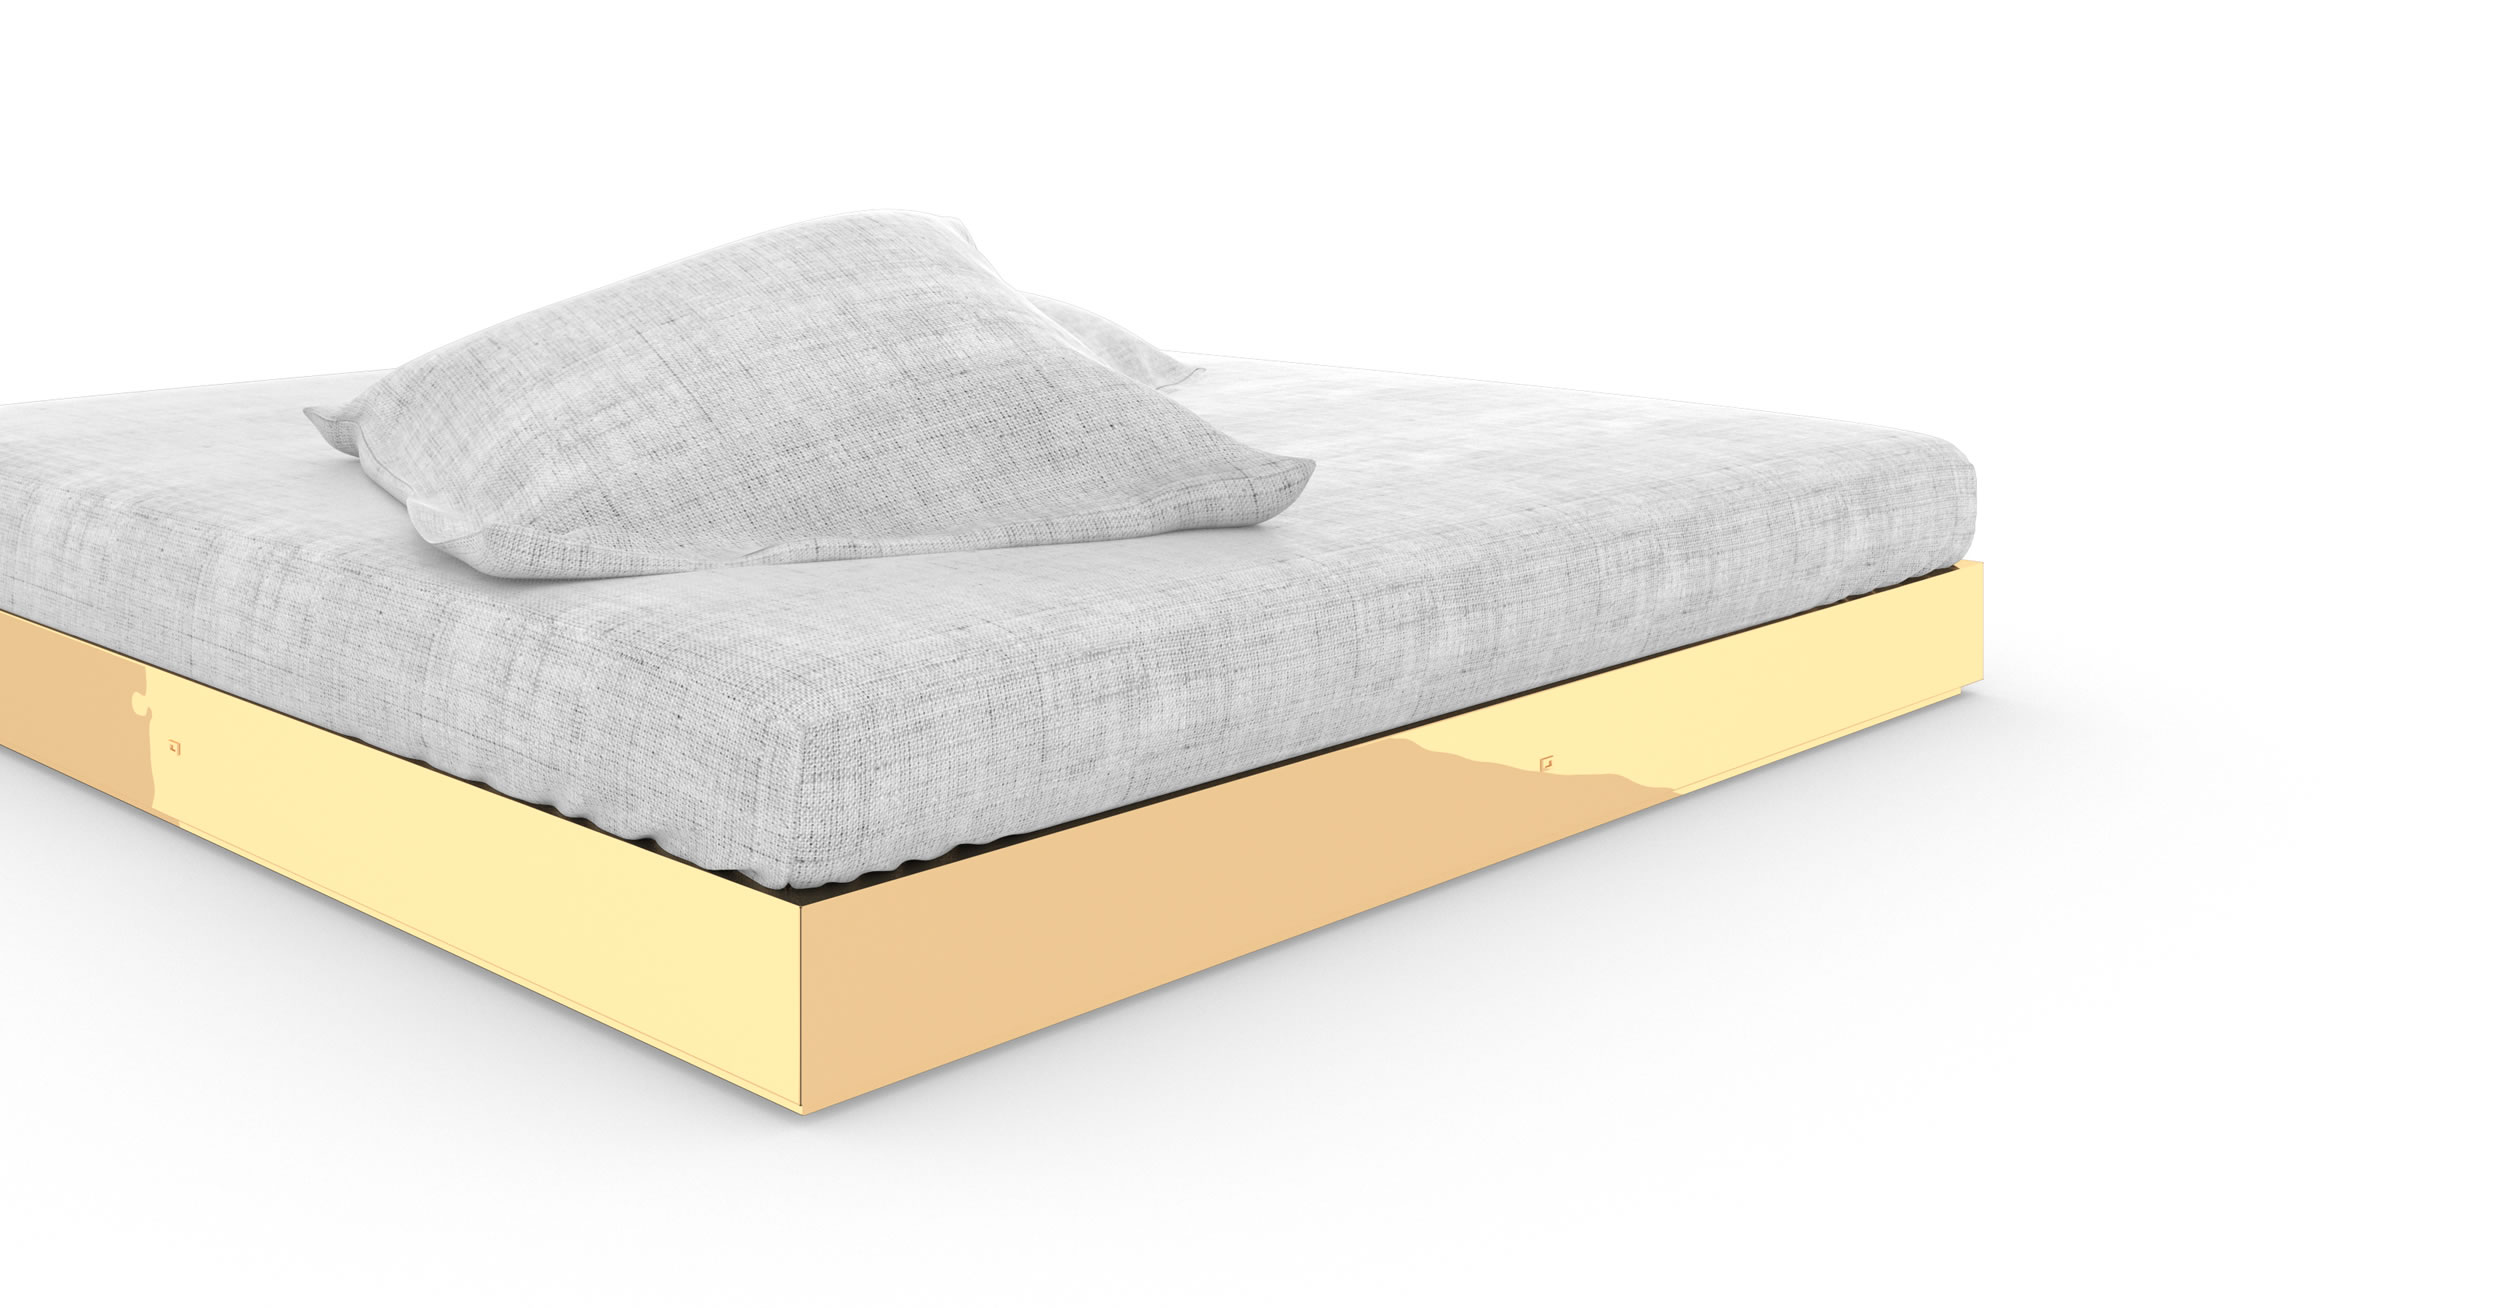 Design Bed Luxury Gold Custom Made Artwork Exclusive Purist Elegant InteriorFELIX SCHWAKE